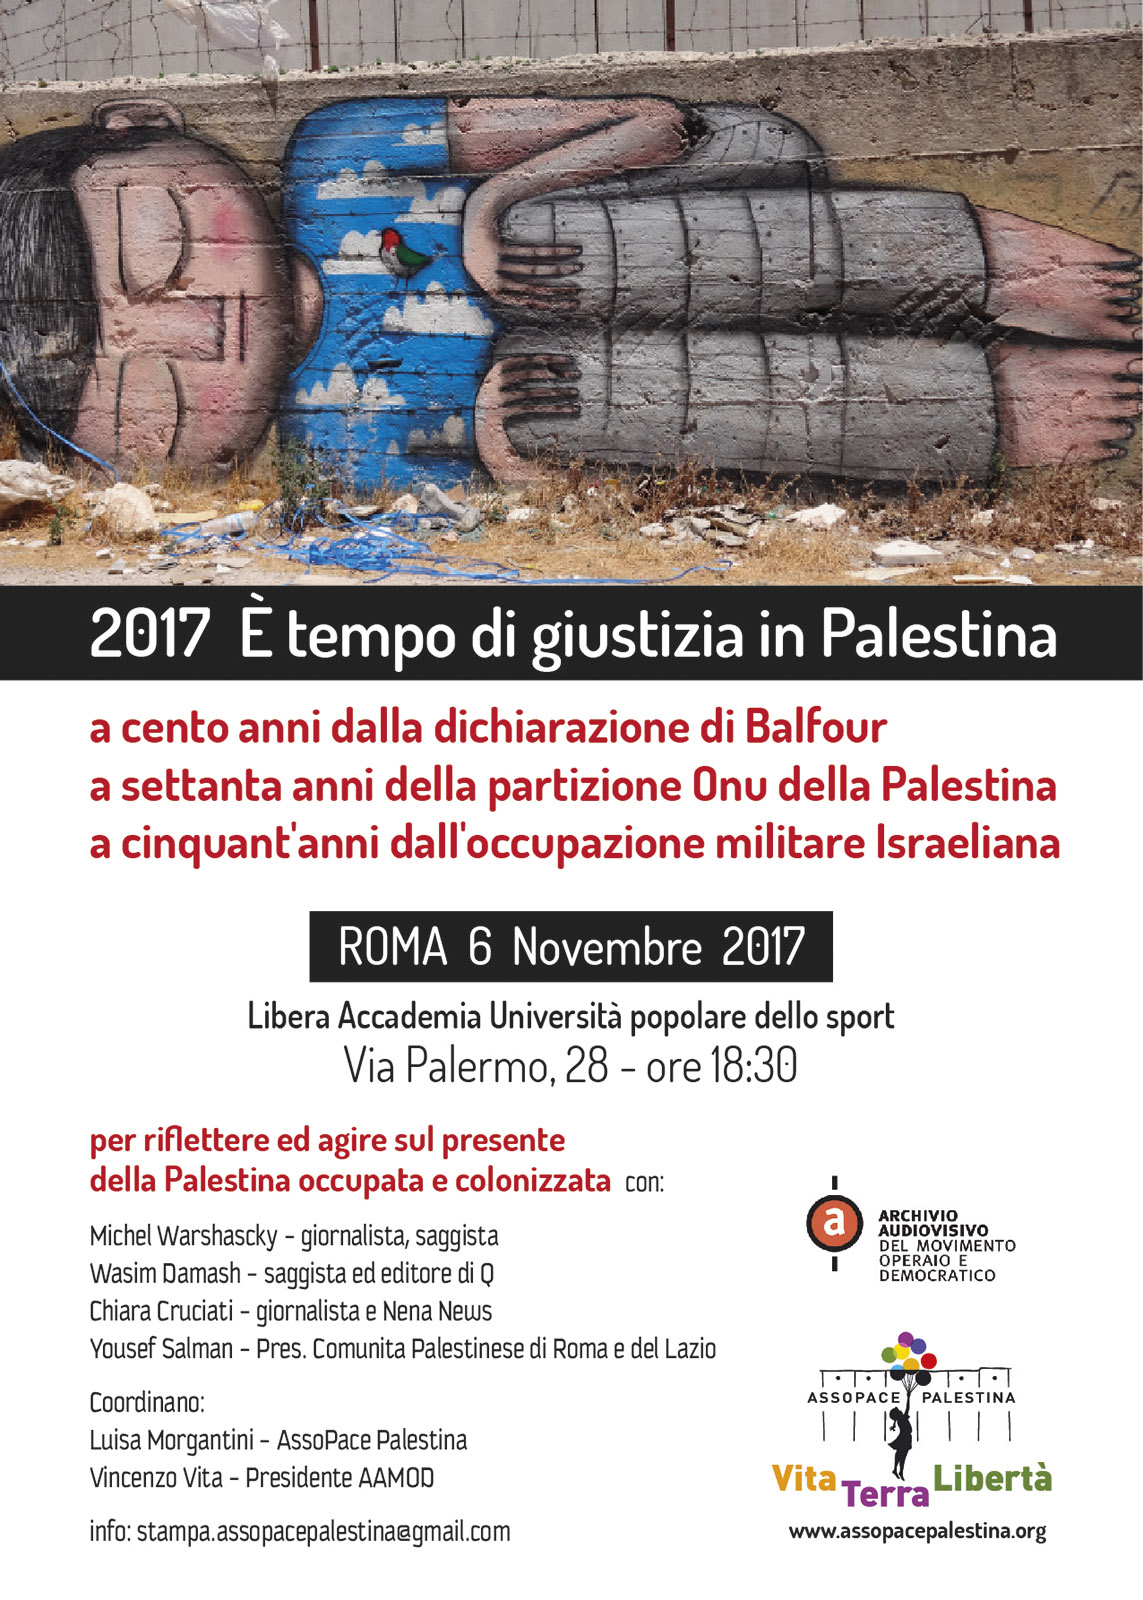 Roma 6 Novembre: 2017 è tempo di giustizia in Palestina